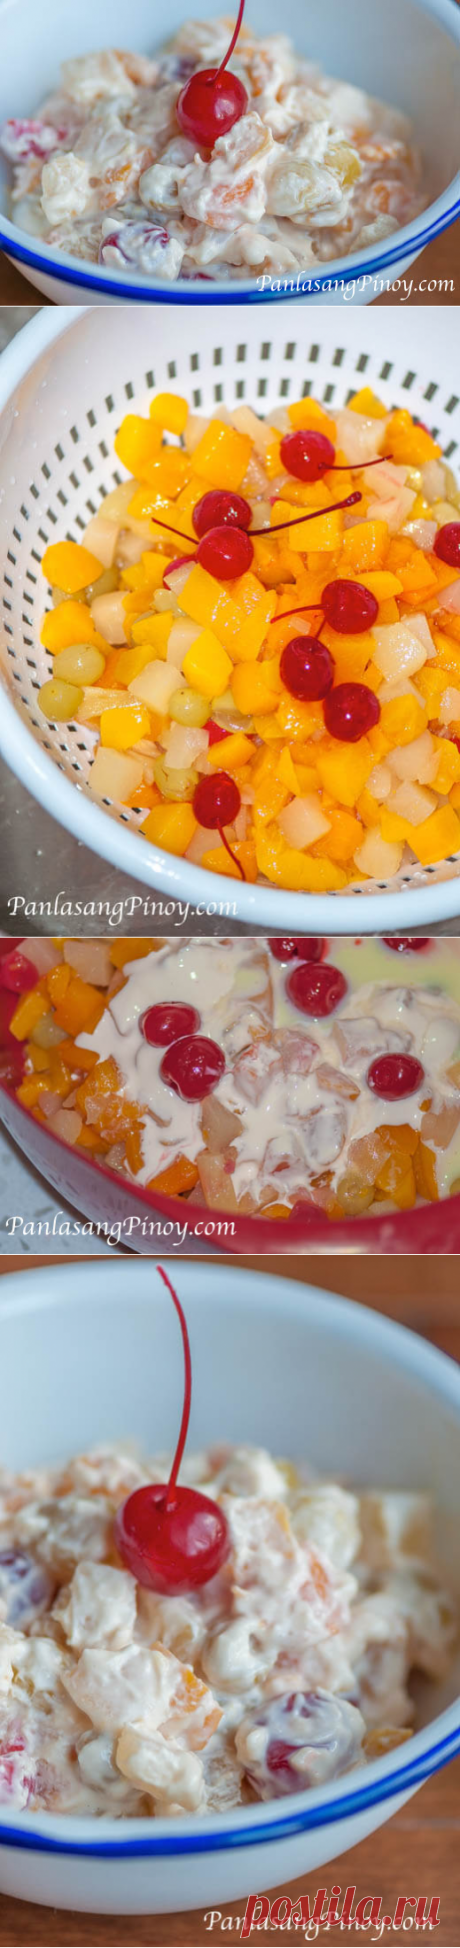 Pinoy Fruit Salad Recipe - Panlasang Pinoy